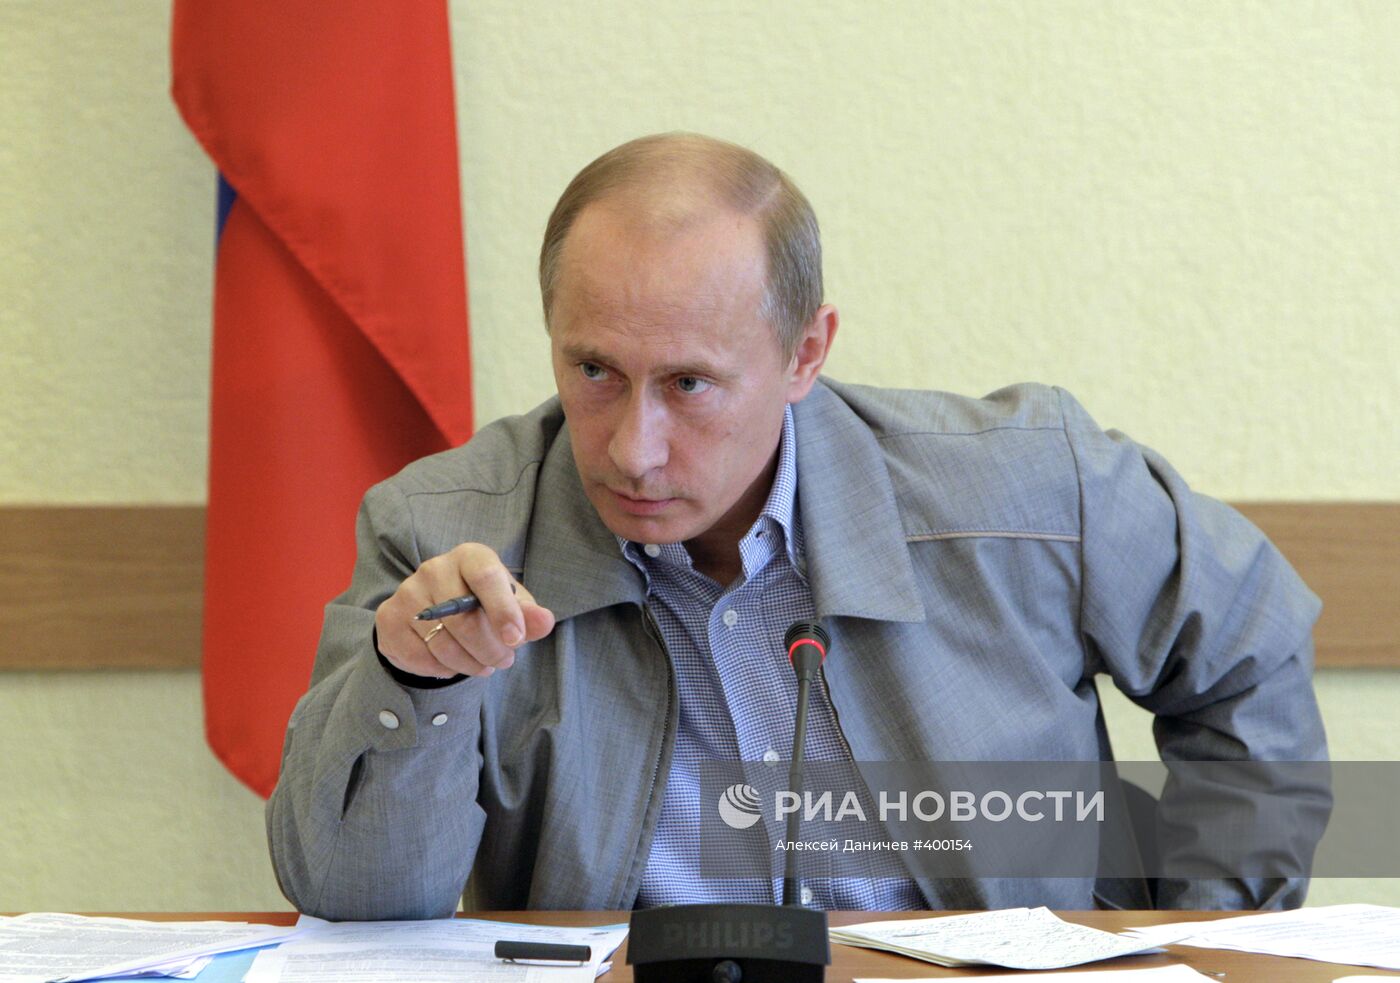 Владимир Путин провел совещание в городе Пикалево